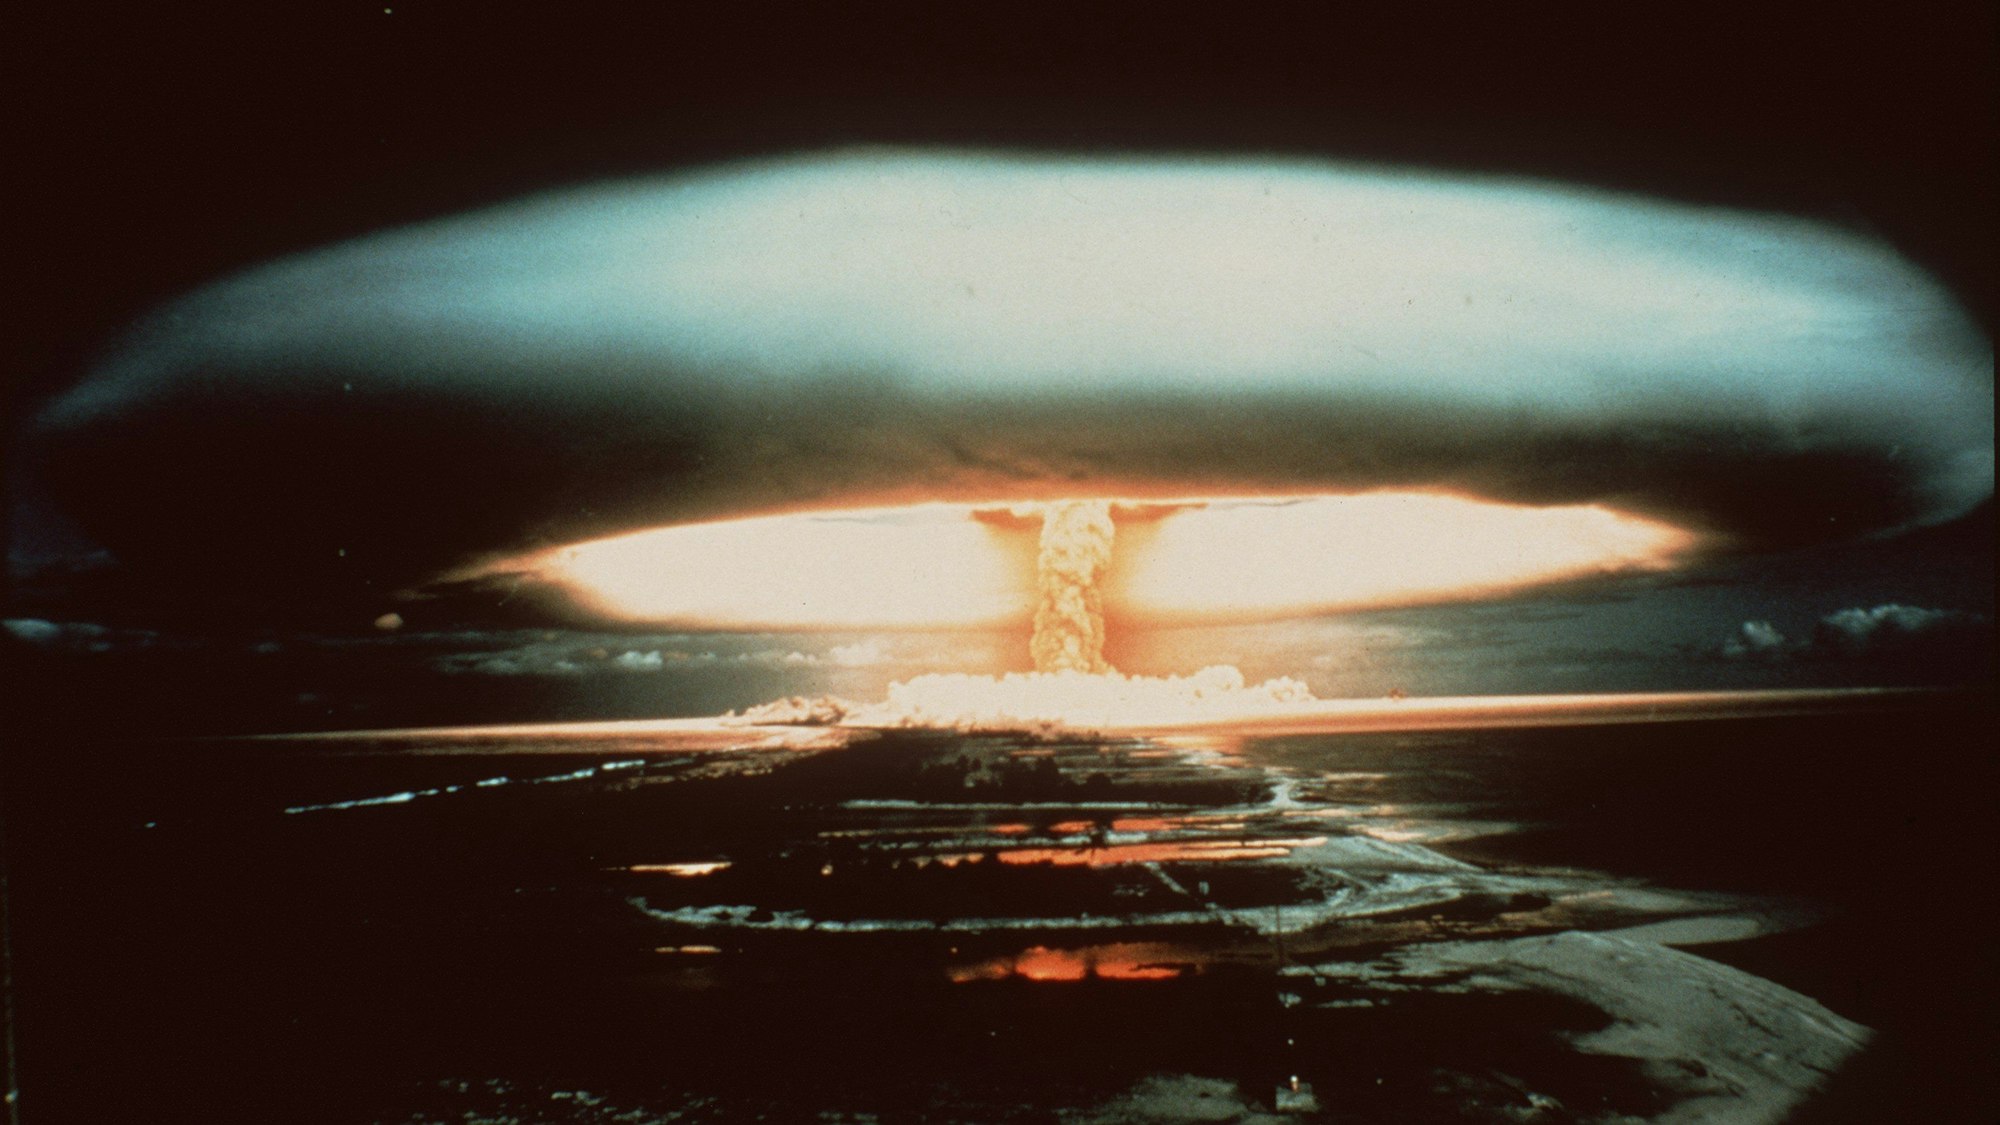 Frankreich, Mururoa-Atoll: Nach der Explosion einer französischen Atombombe schwebt 1970 dieser riesige Atompilz über dem Mururoa-Atoll. (Archivbild)